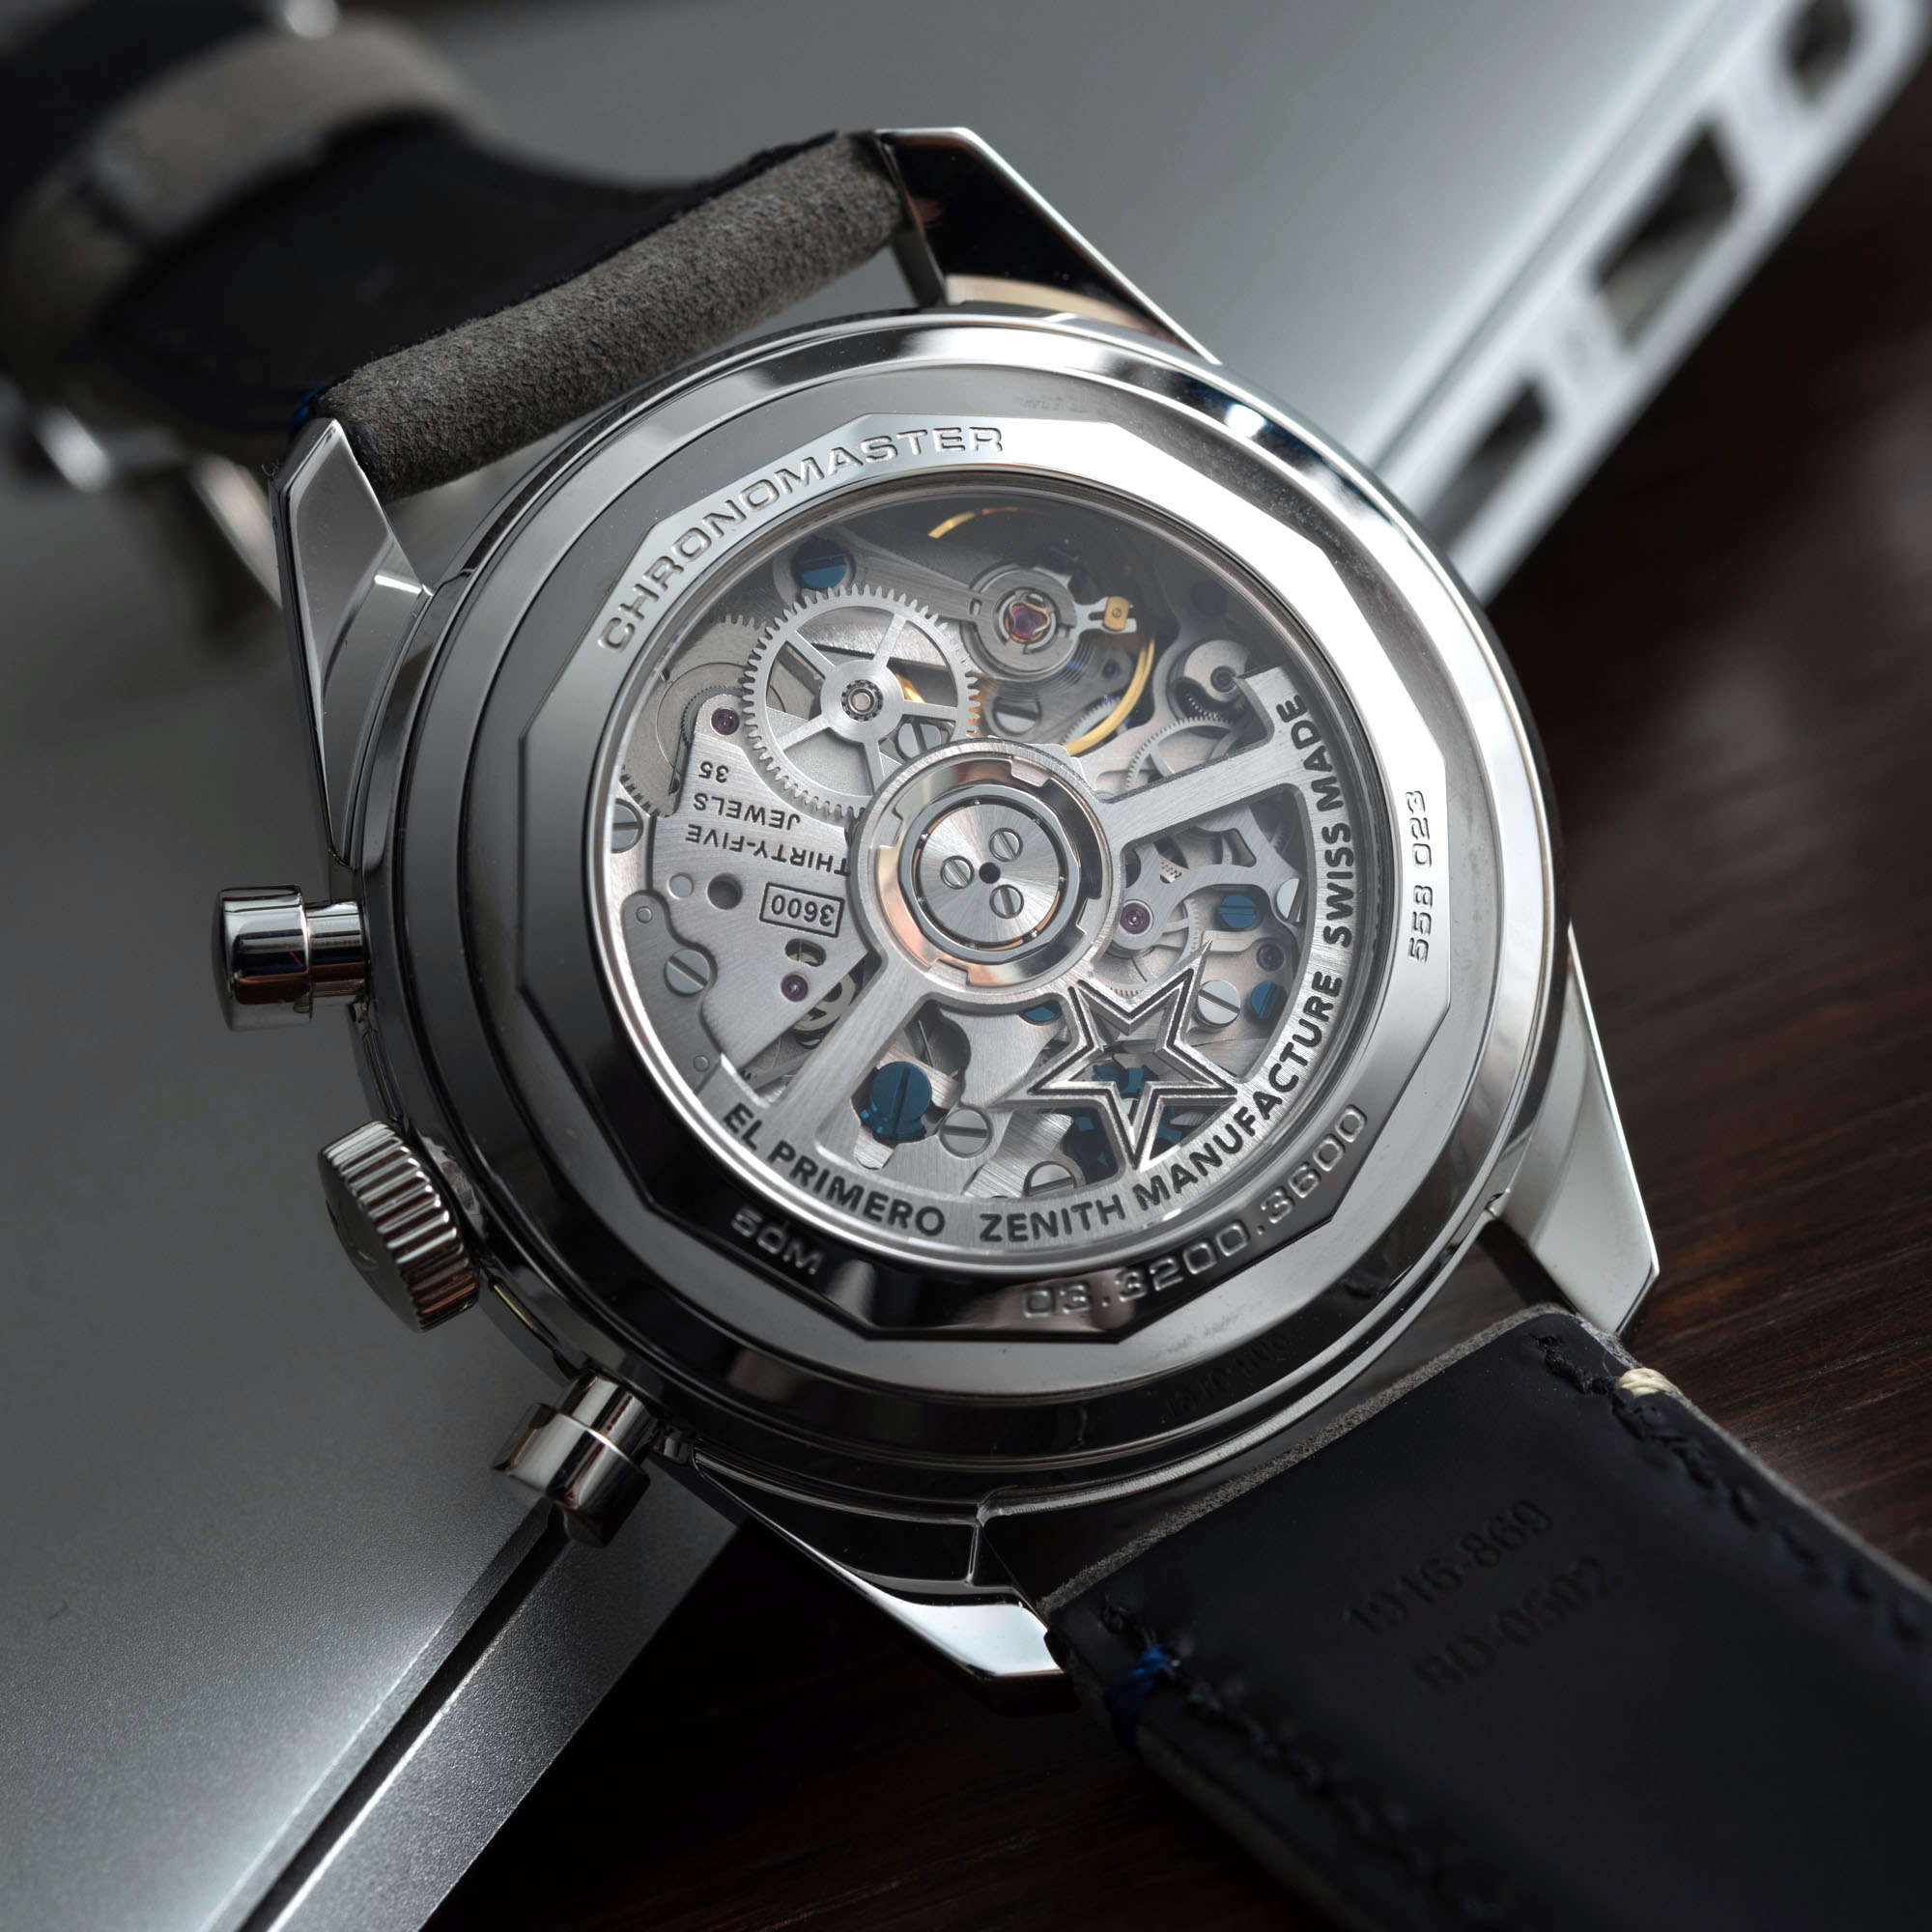 真力时计时大师原创电子商务版引人注目的第10枚腕表